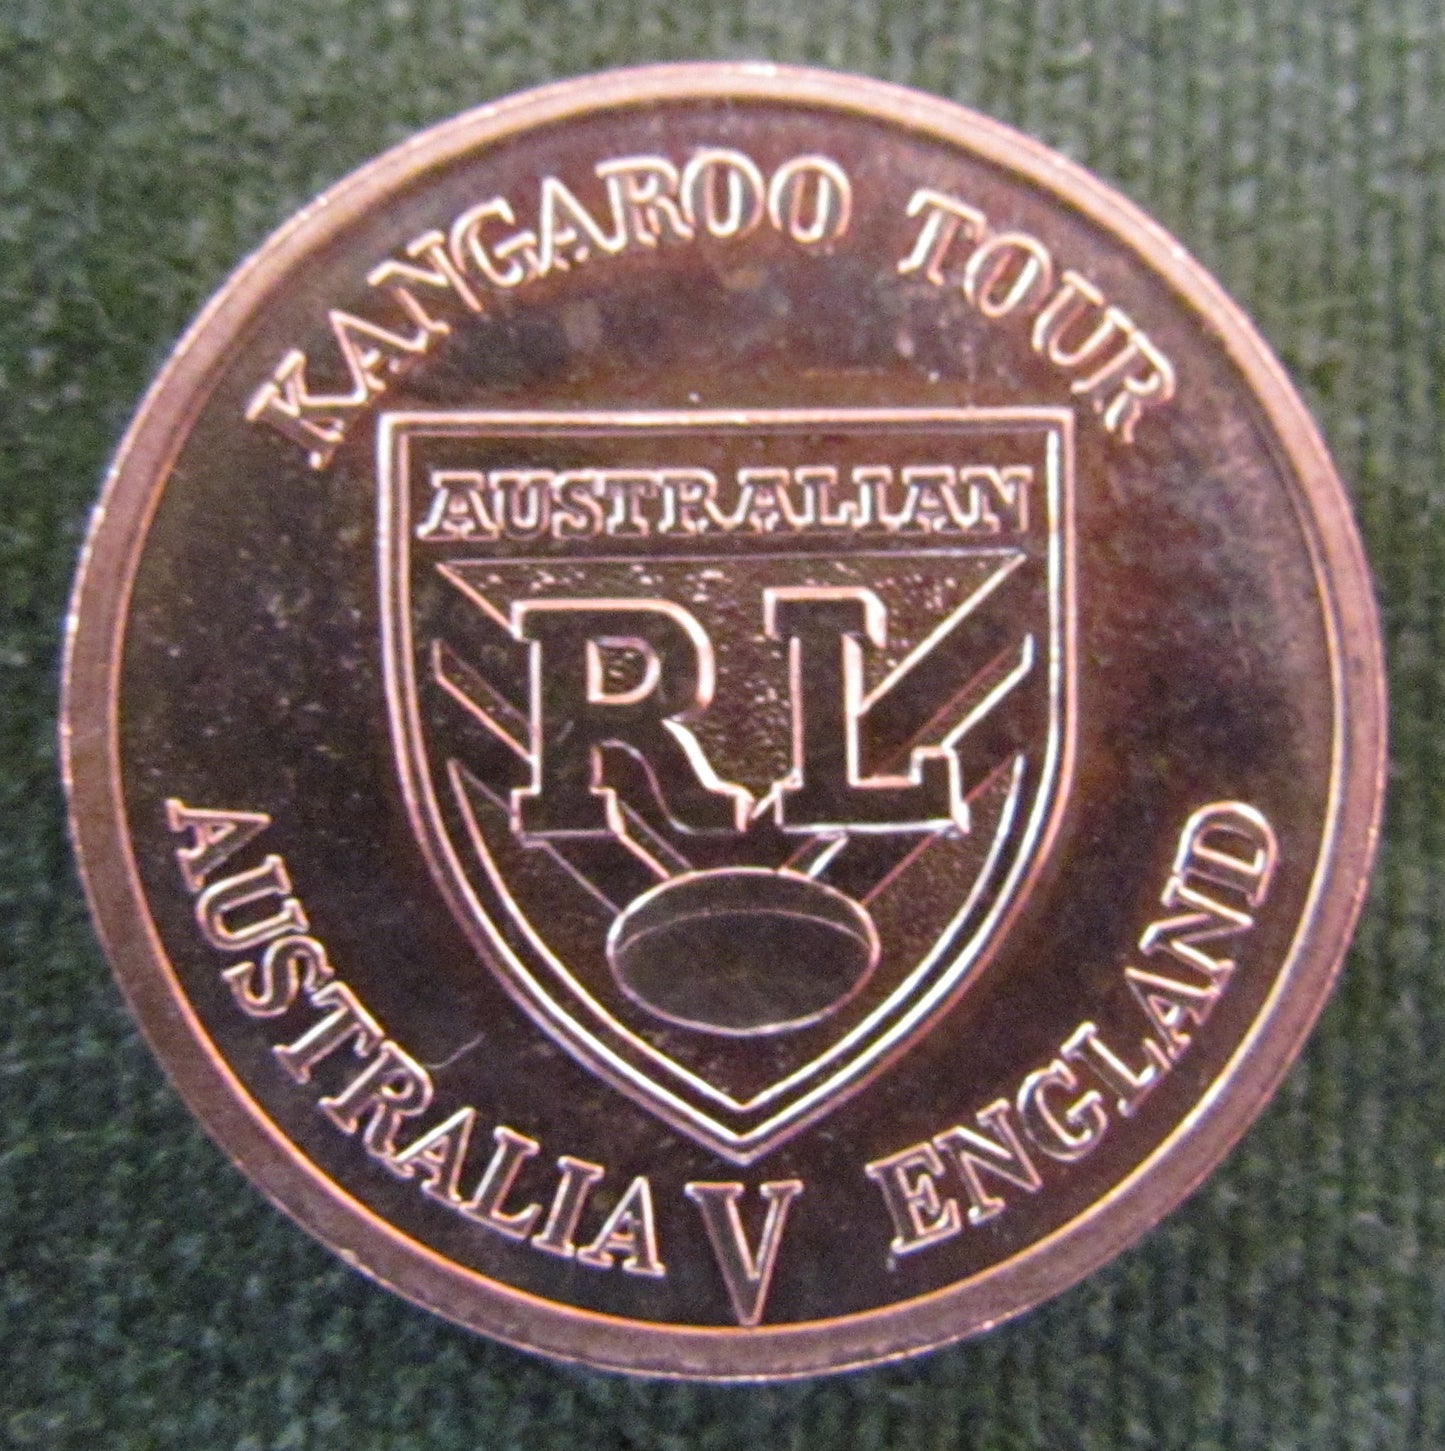 1994 Tour Captain Kangaroo Tour Salute To Mal Meninga Medallion